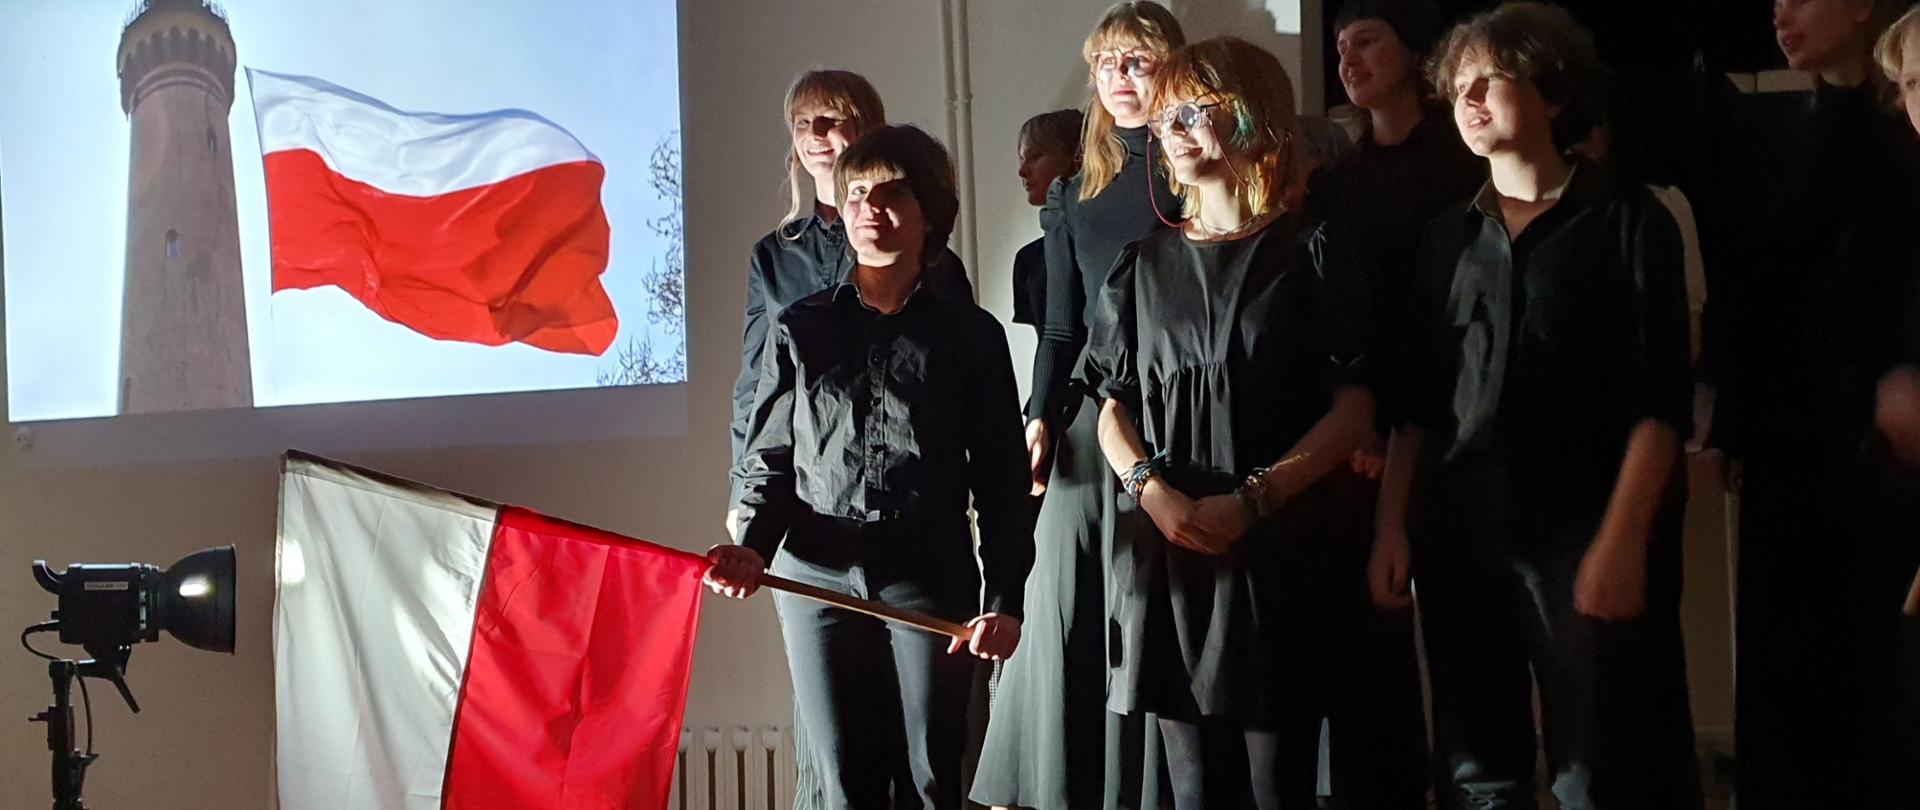 Zdjęcie - w centrum uczniowie, w czarnych strojach. Jedna postać trzyma flagę biało - czerwoną.